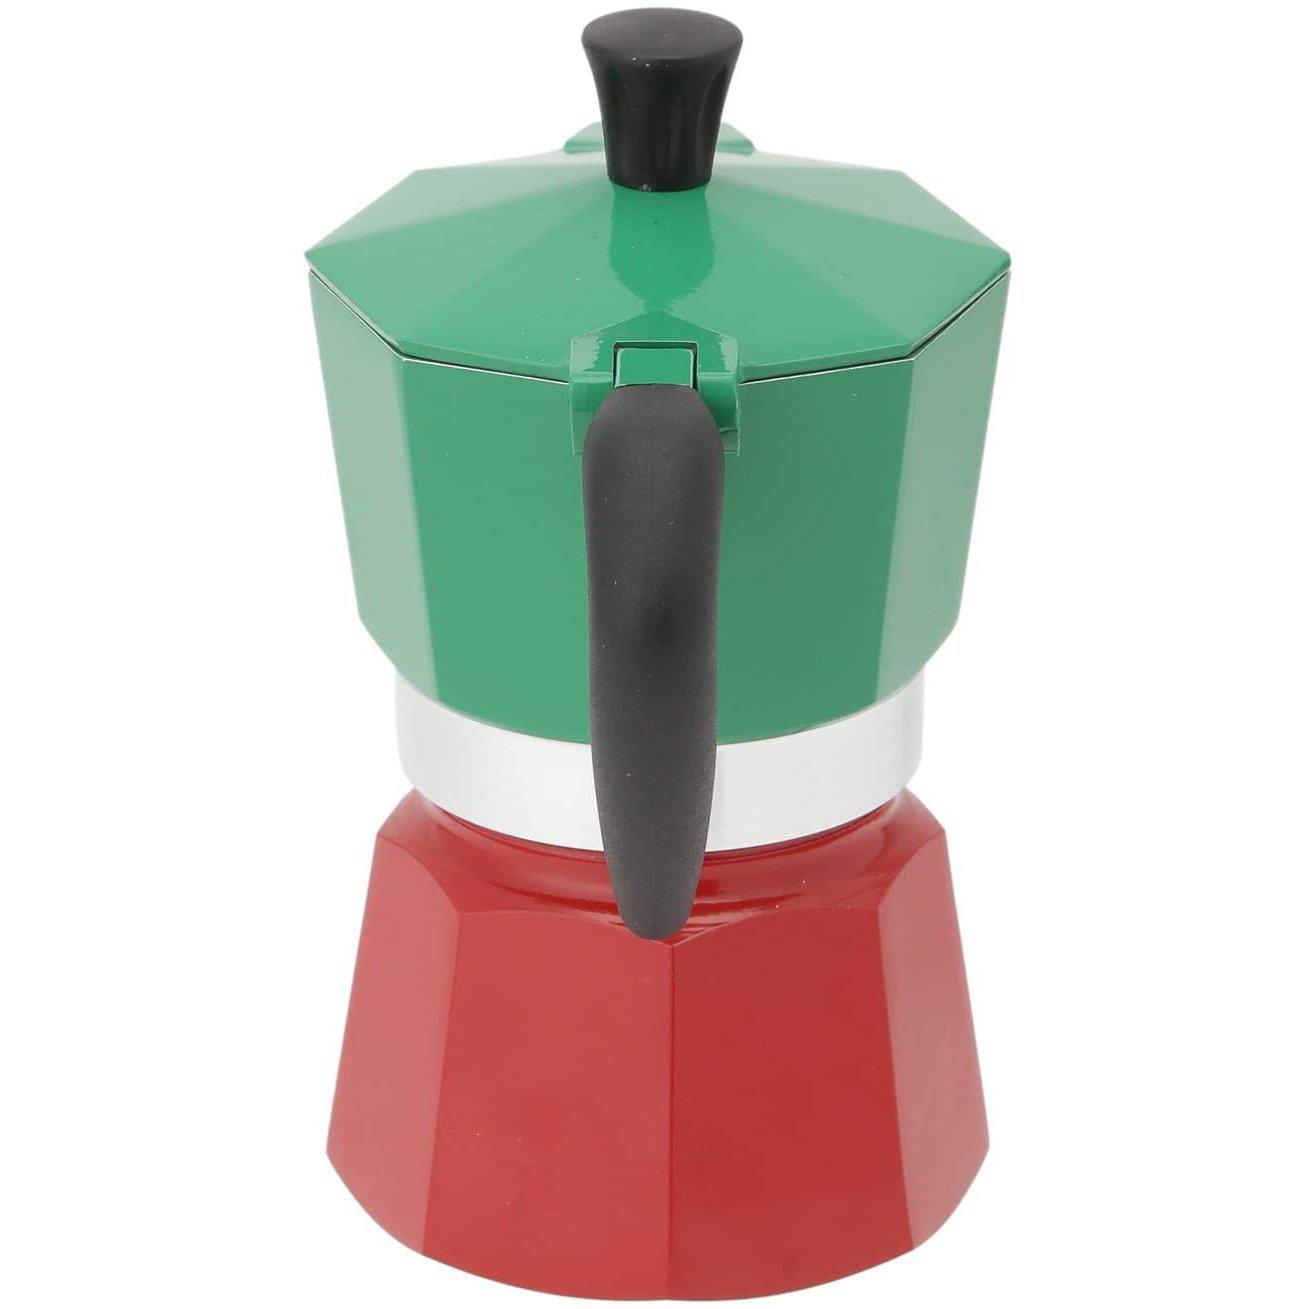 Bialetti 3 Cup Stovetop Espresso Maker Tricolour Handle USA